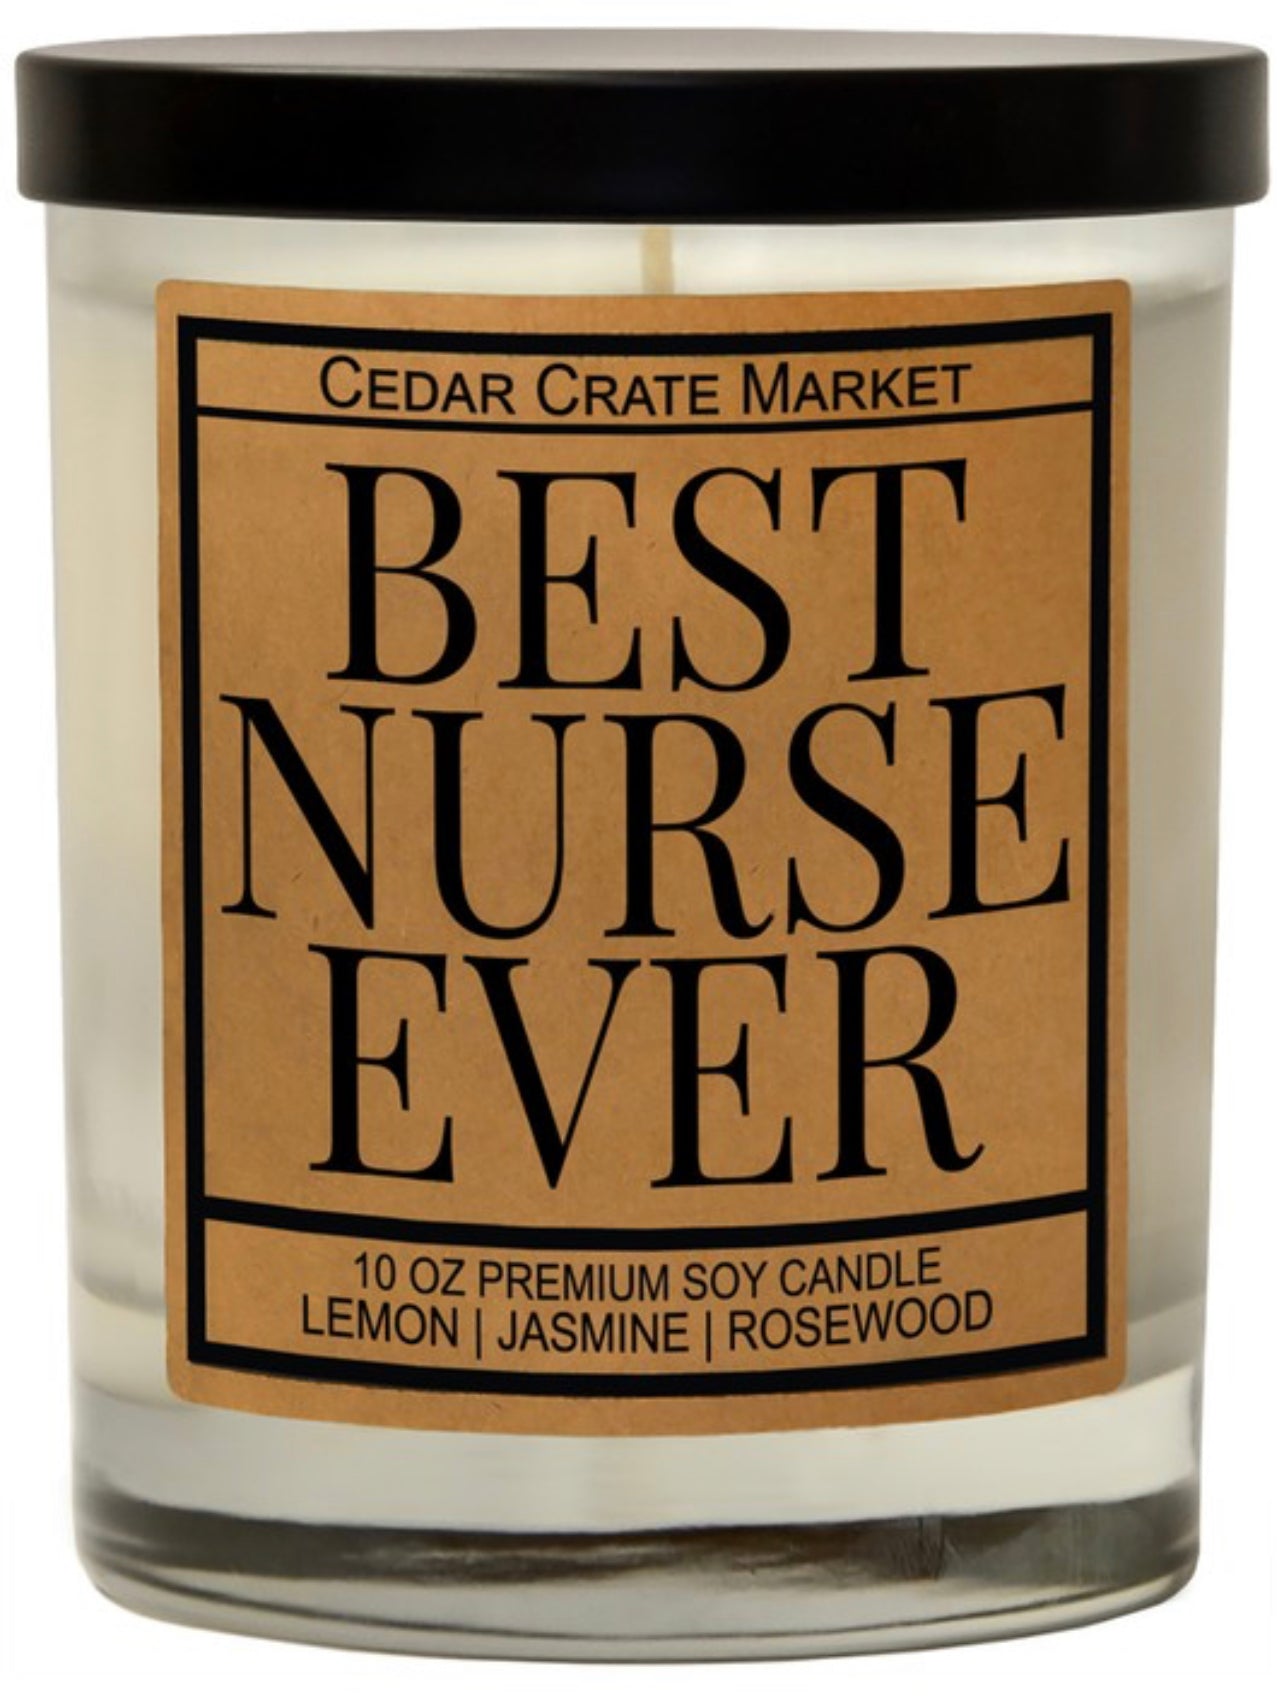 Best Nurse Ever Candle